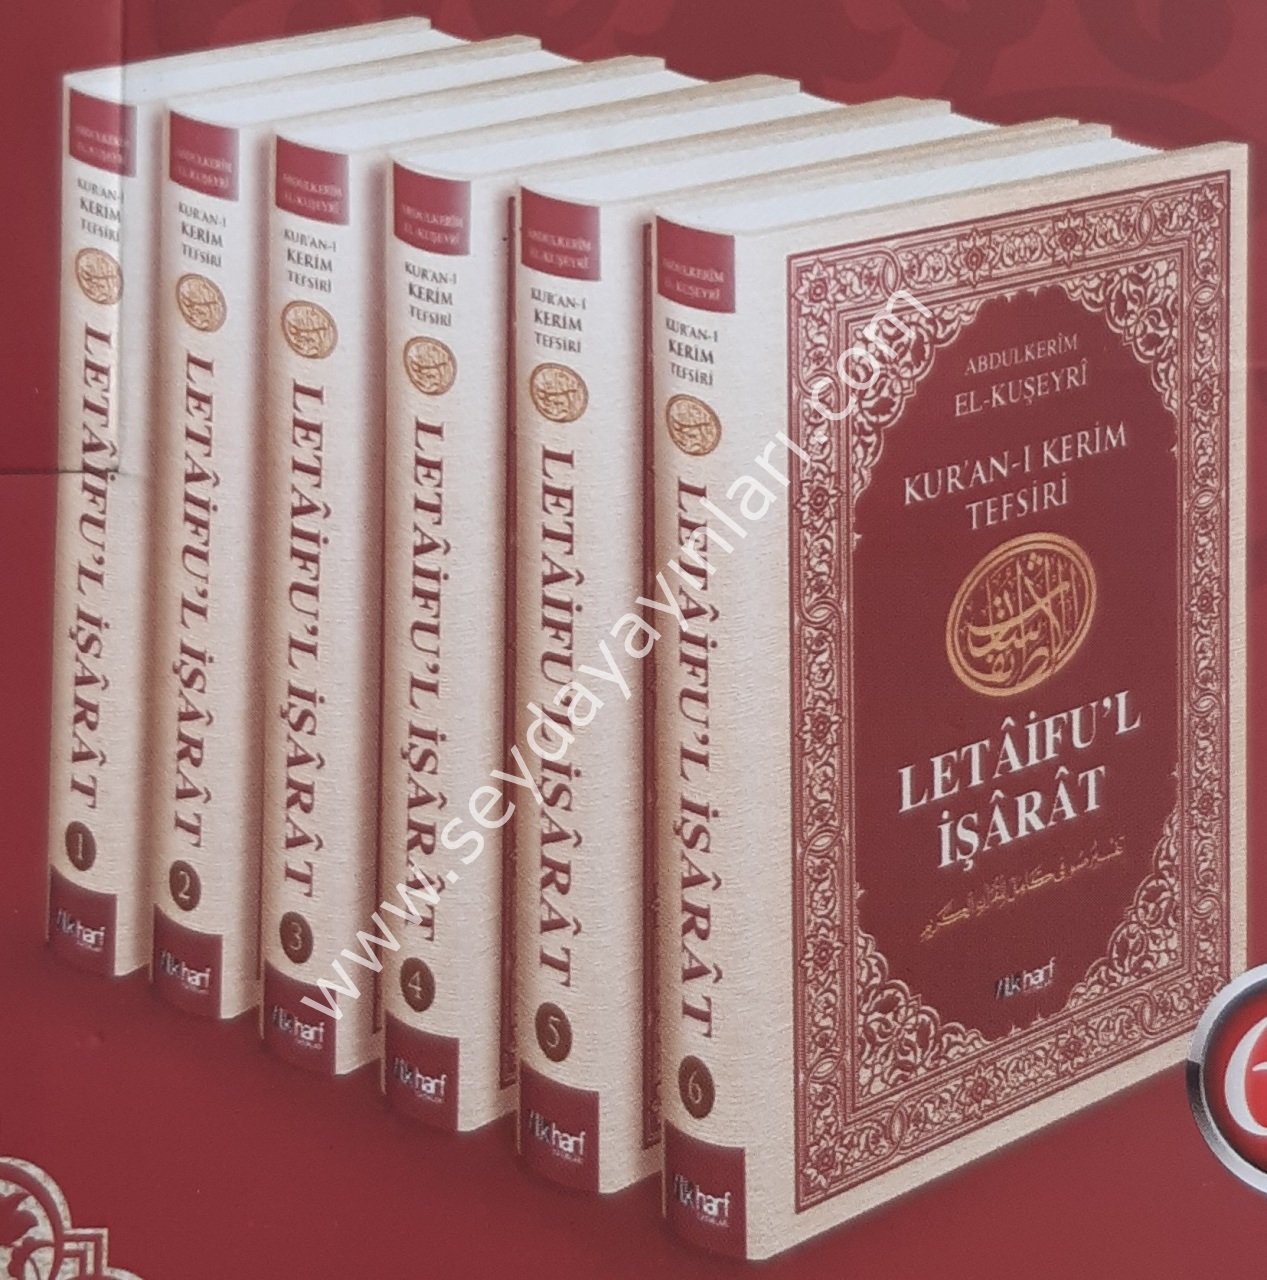 Kur'an-ı Kerim Tefsiri Letâifu'l İşârât